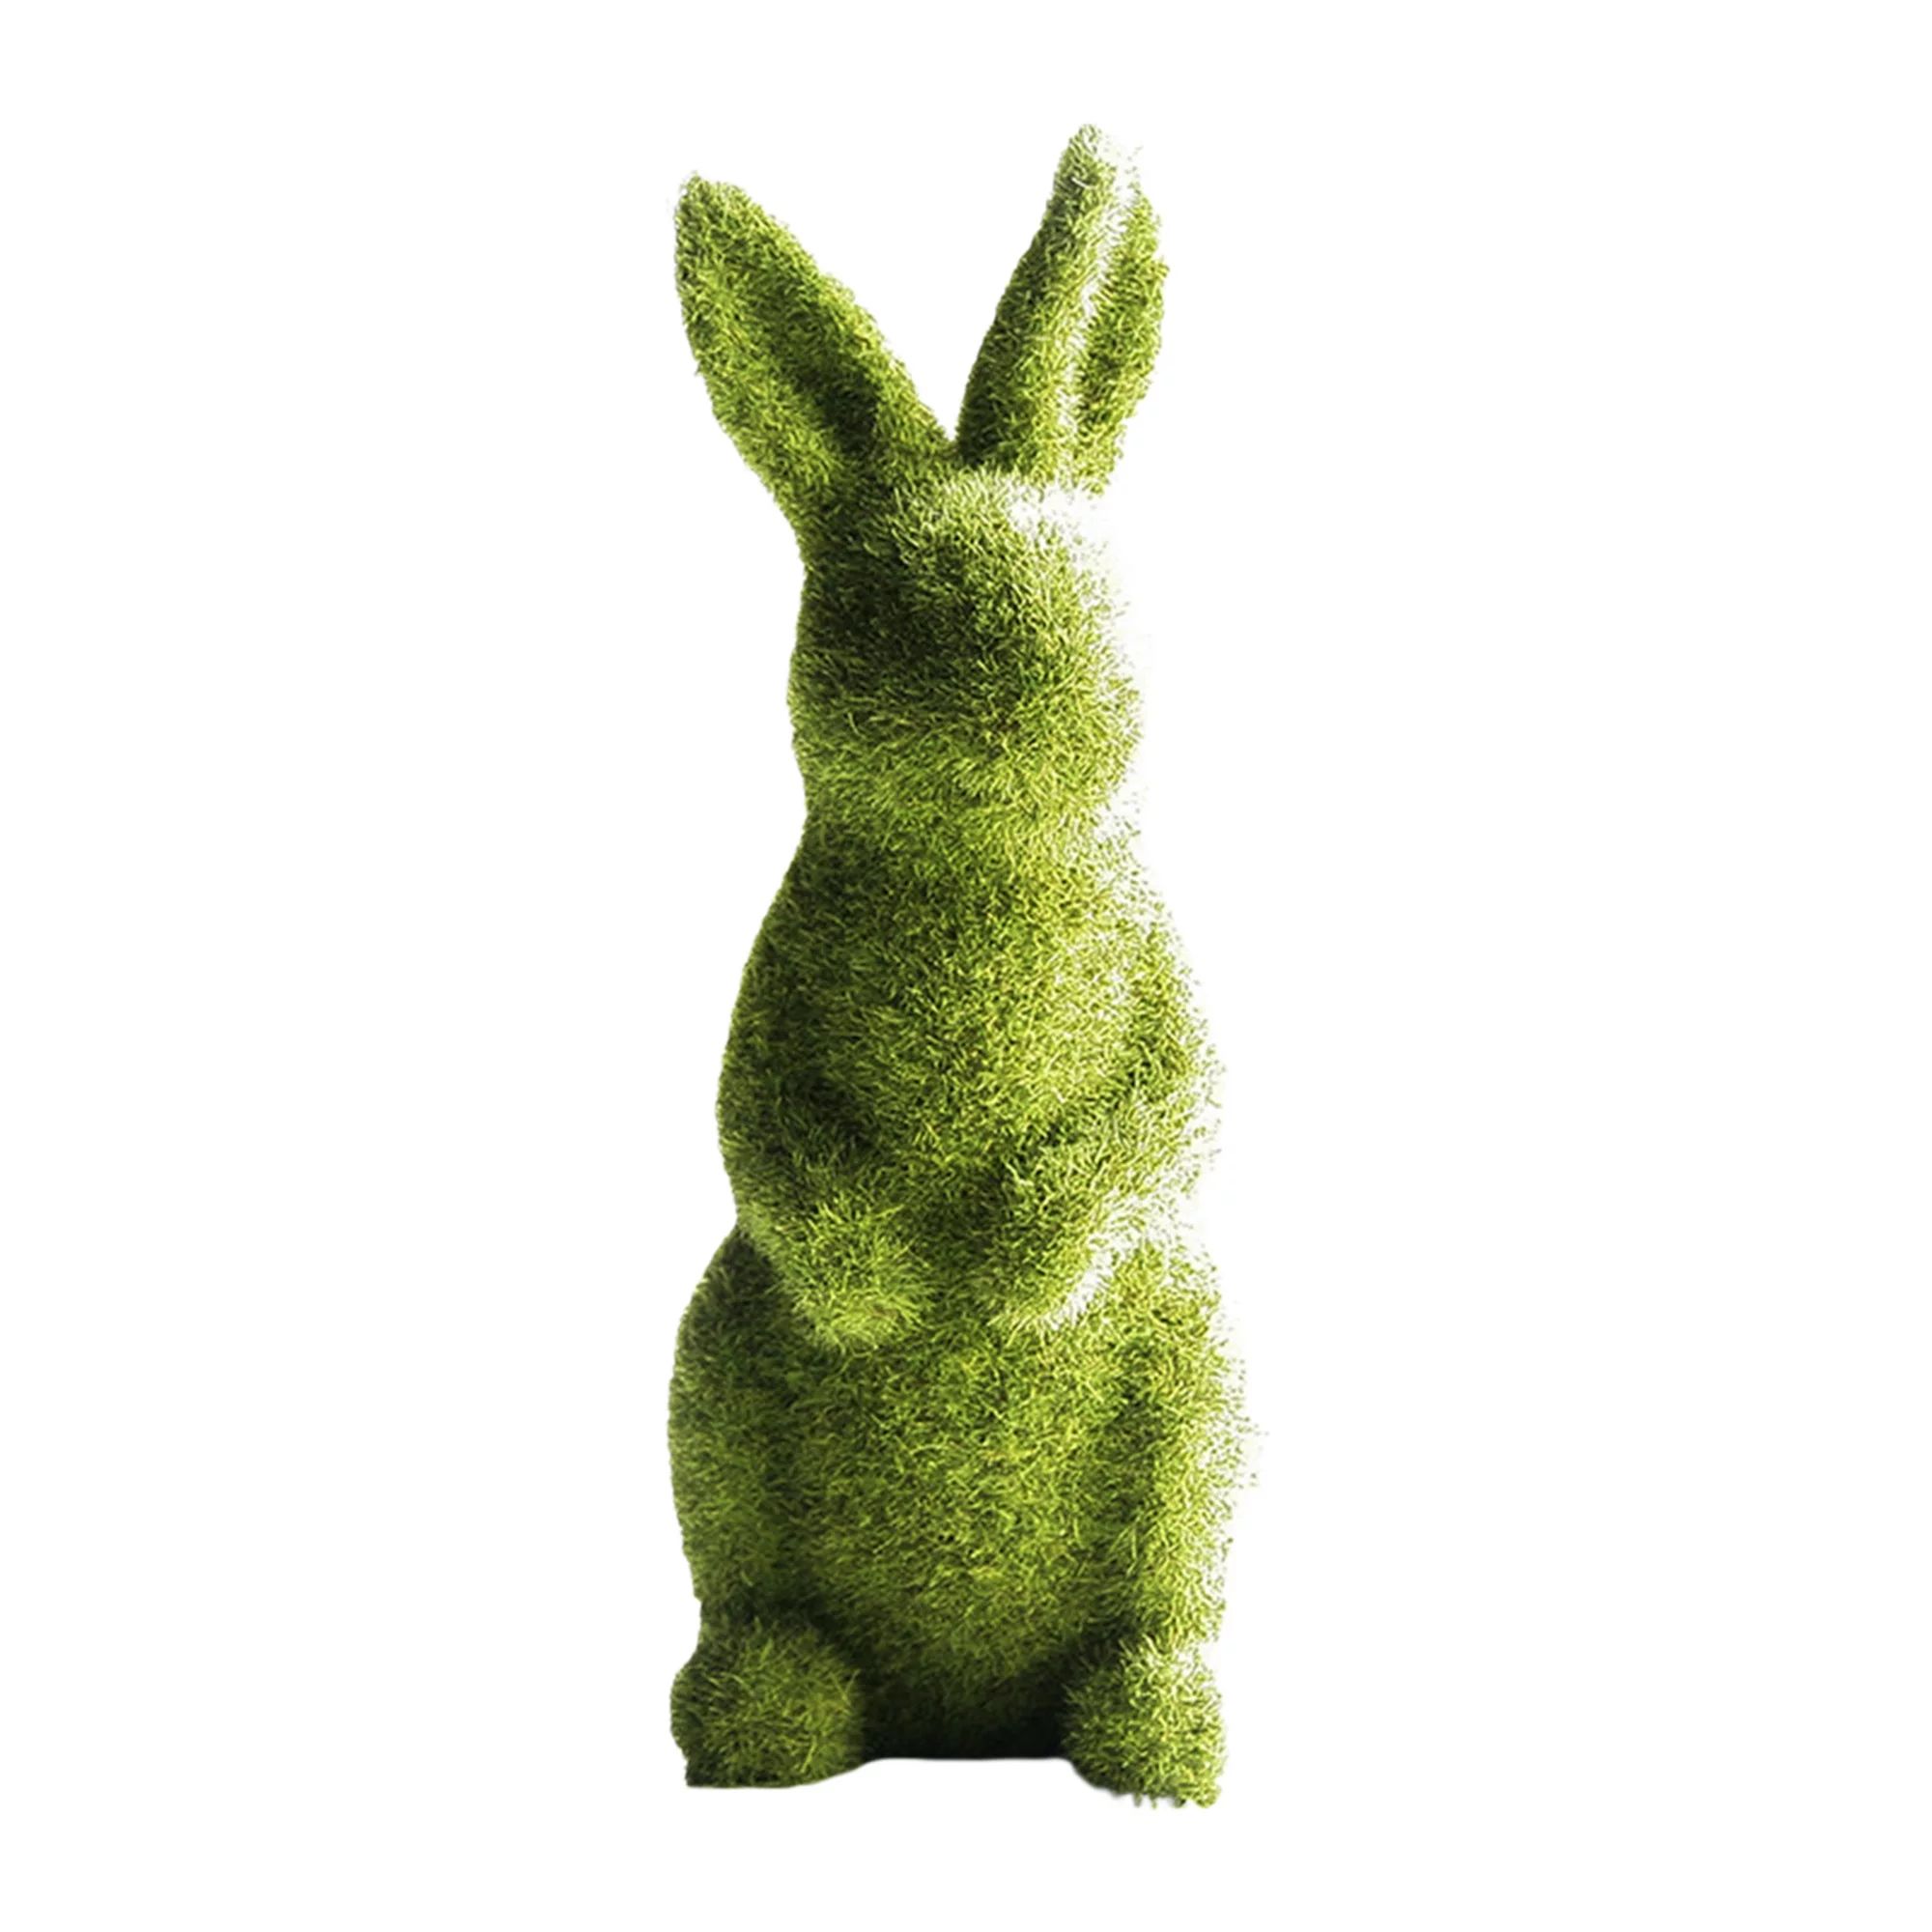 Musuos Imitation Moss Rabbit Resin Sculpture Garden Ornament (Green) - Walmart.com | Walmart (US)